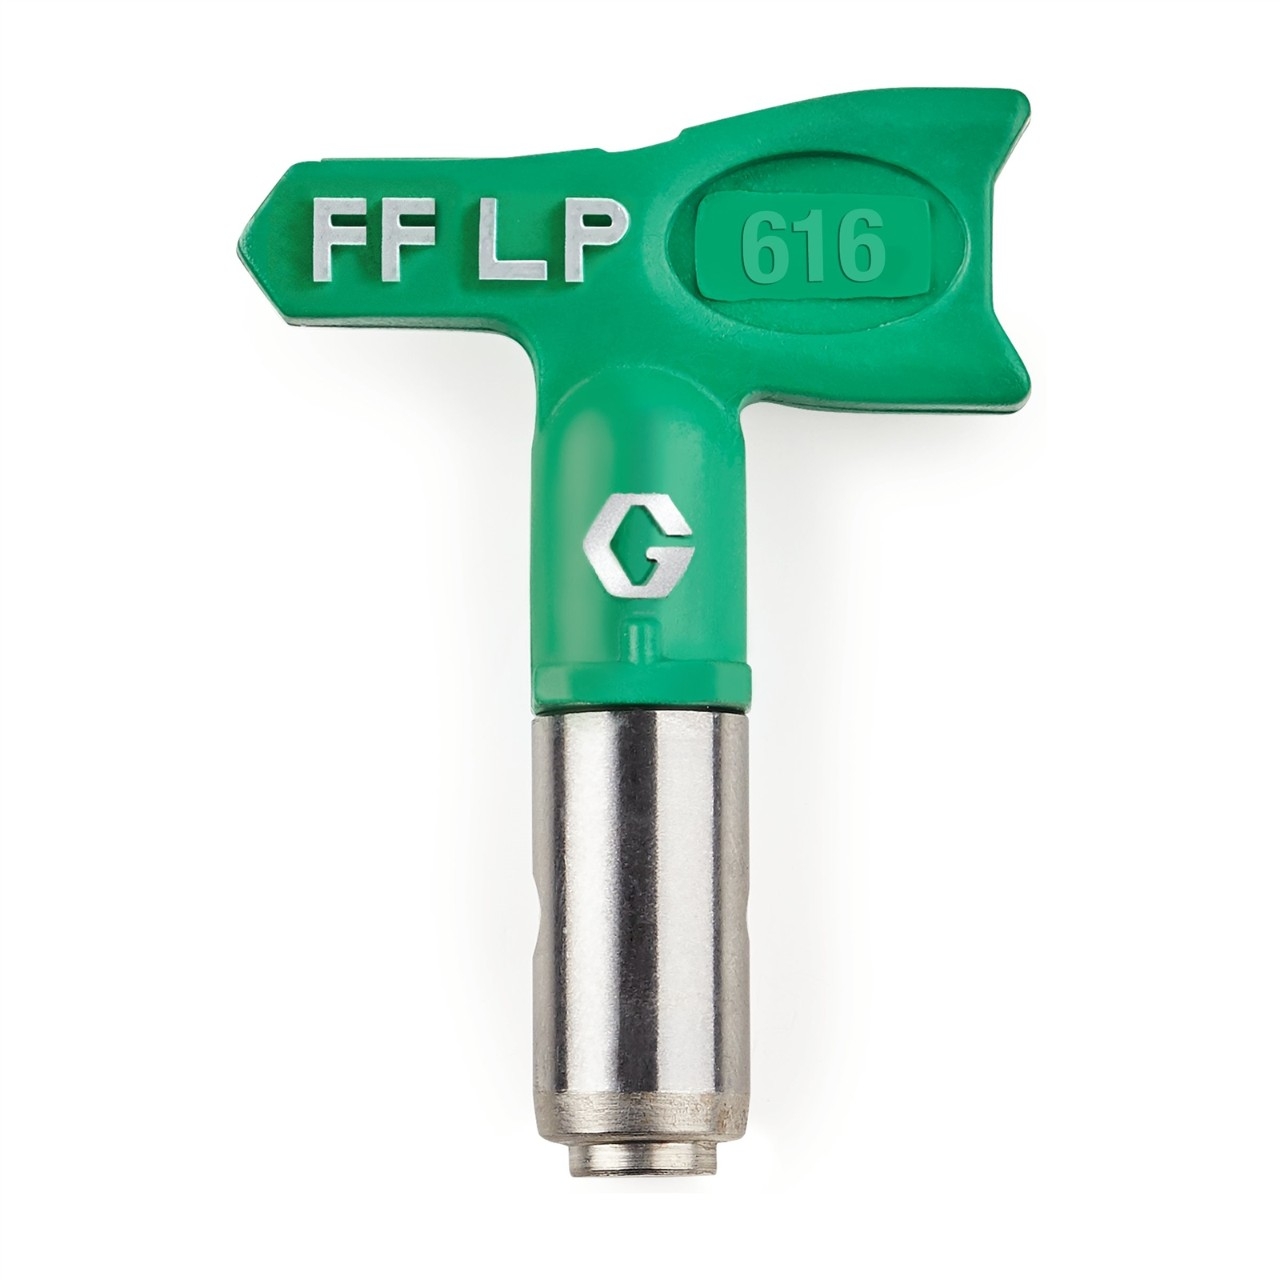  FFLP616 Duză FFLP SwitchTip 616, pentru finisaj fin la presiune scăzută, compatibilă cu RAC X